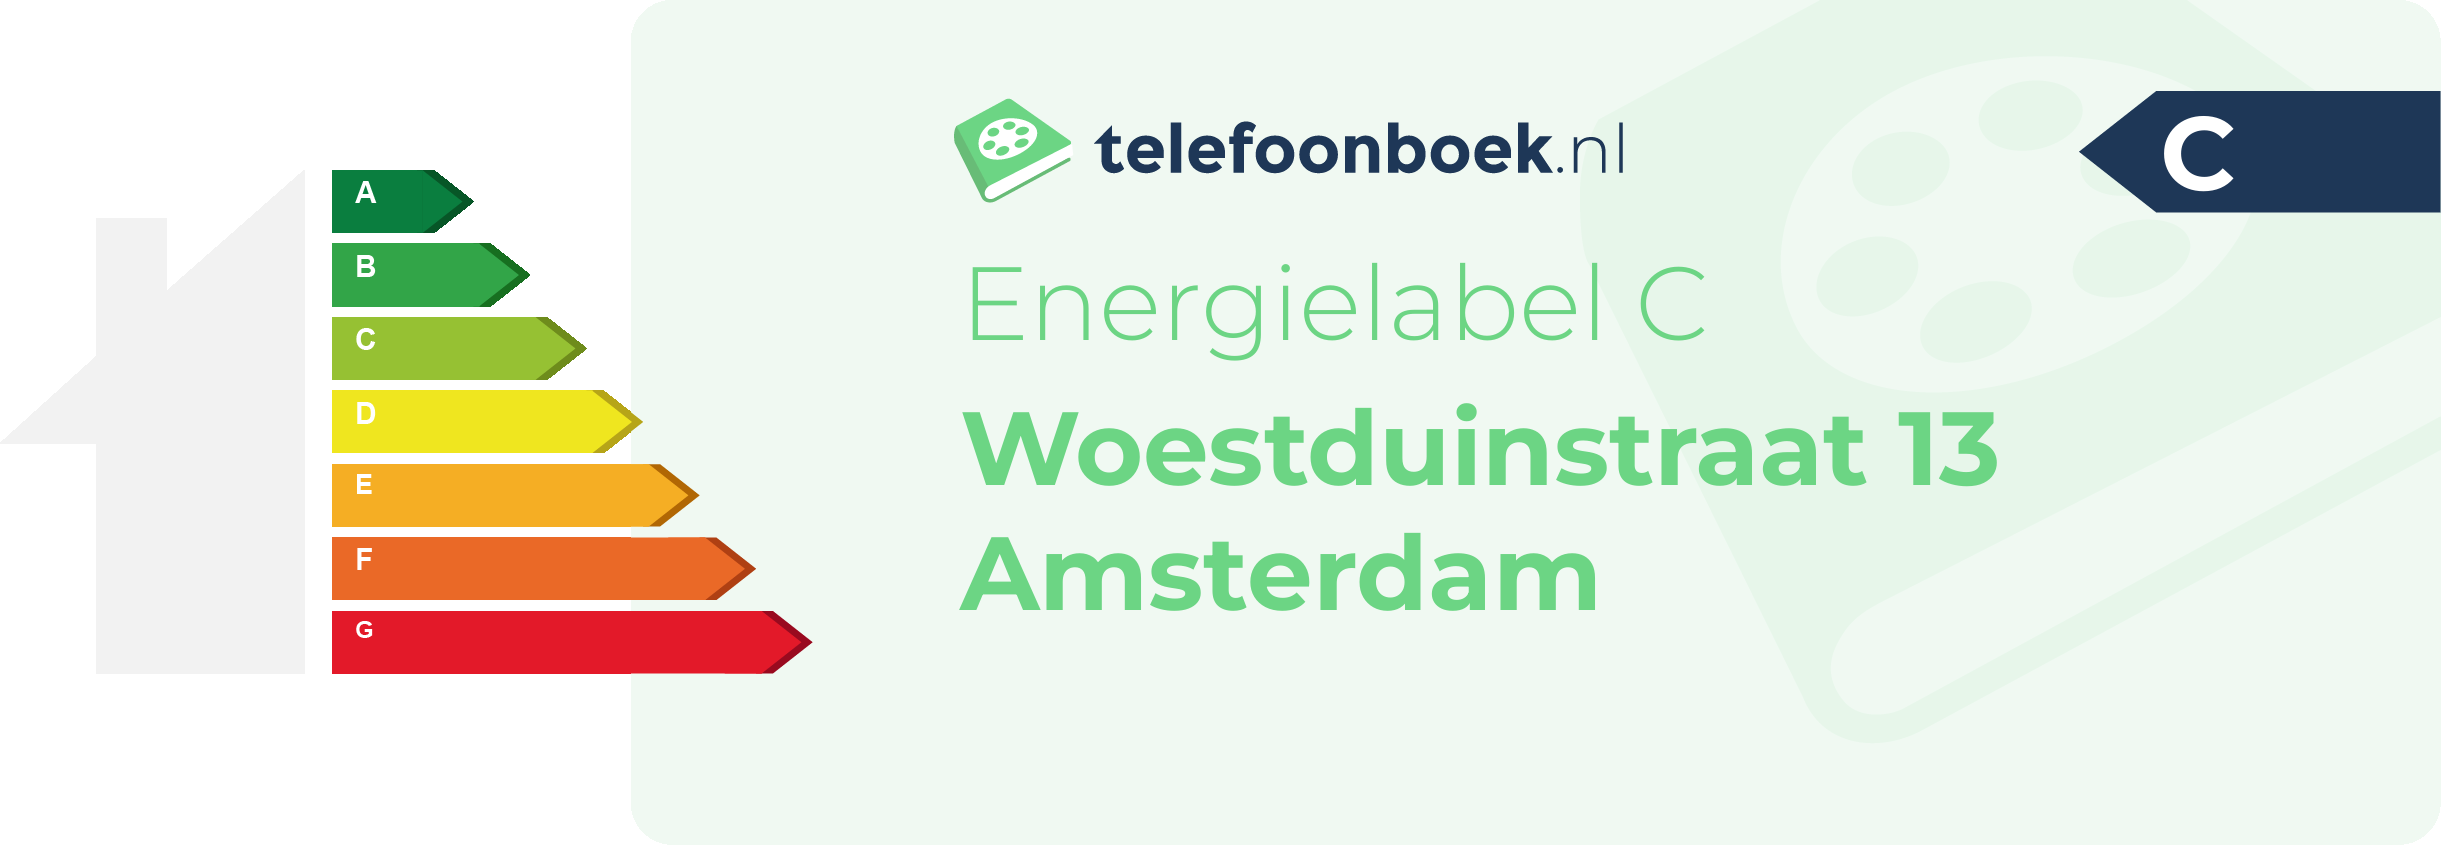 Energielabel Woestduinstraat 13 Amsterdam